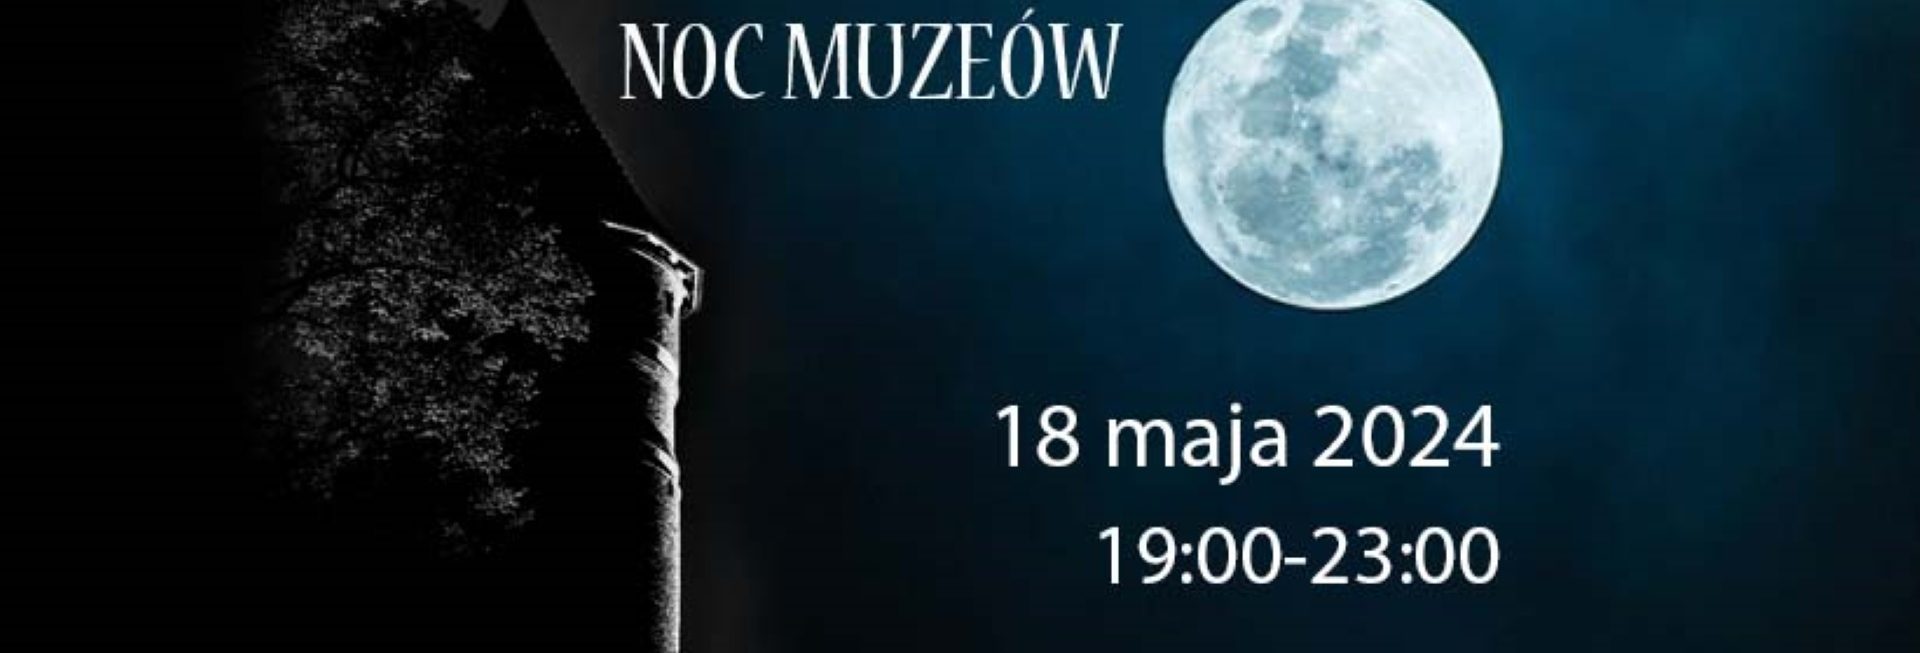 Plakat zapraszający w niedzielę 18 maja 2024 r. do Muzeum Warmii i Mazur w Olsztynie na Noc Muzeów w Olsztyńskim Zamku 2024.